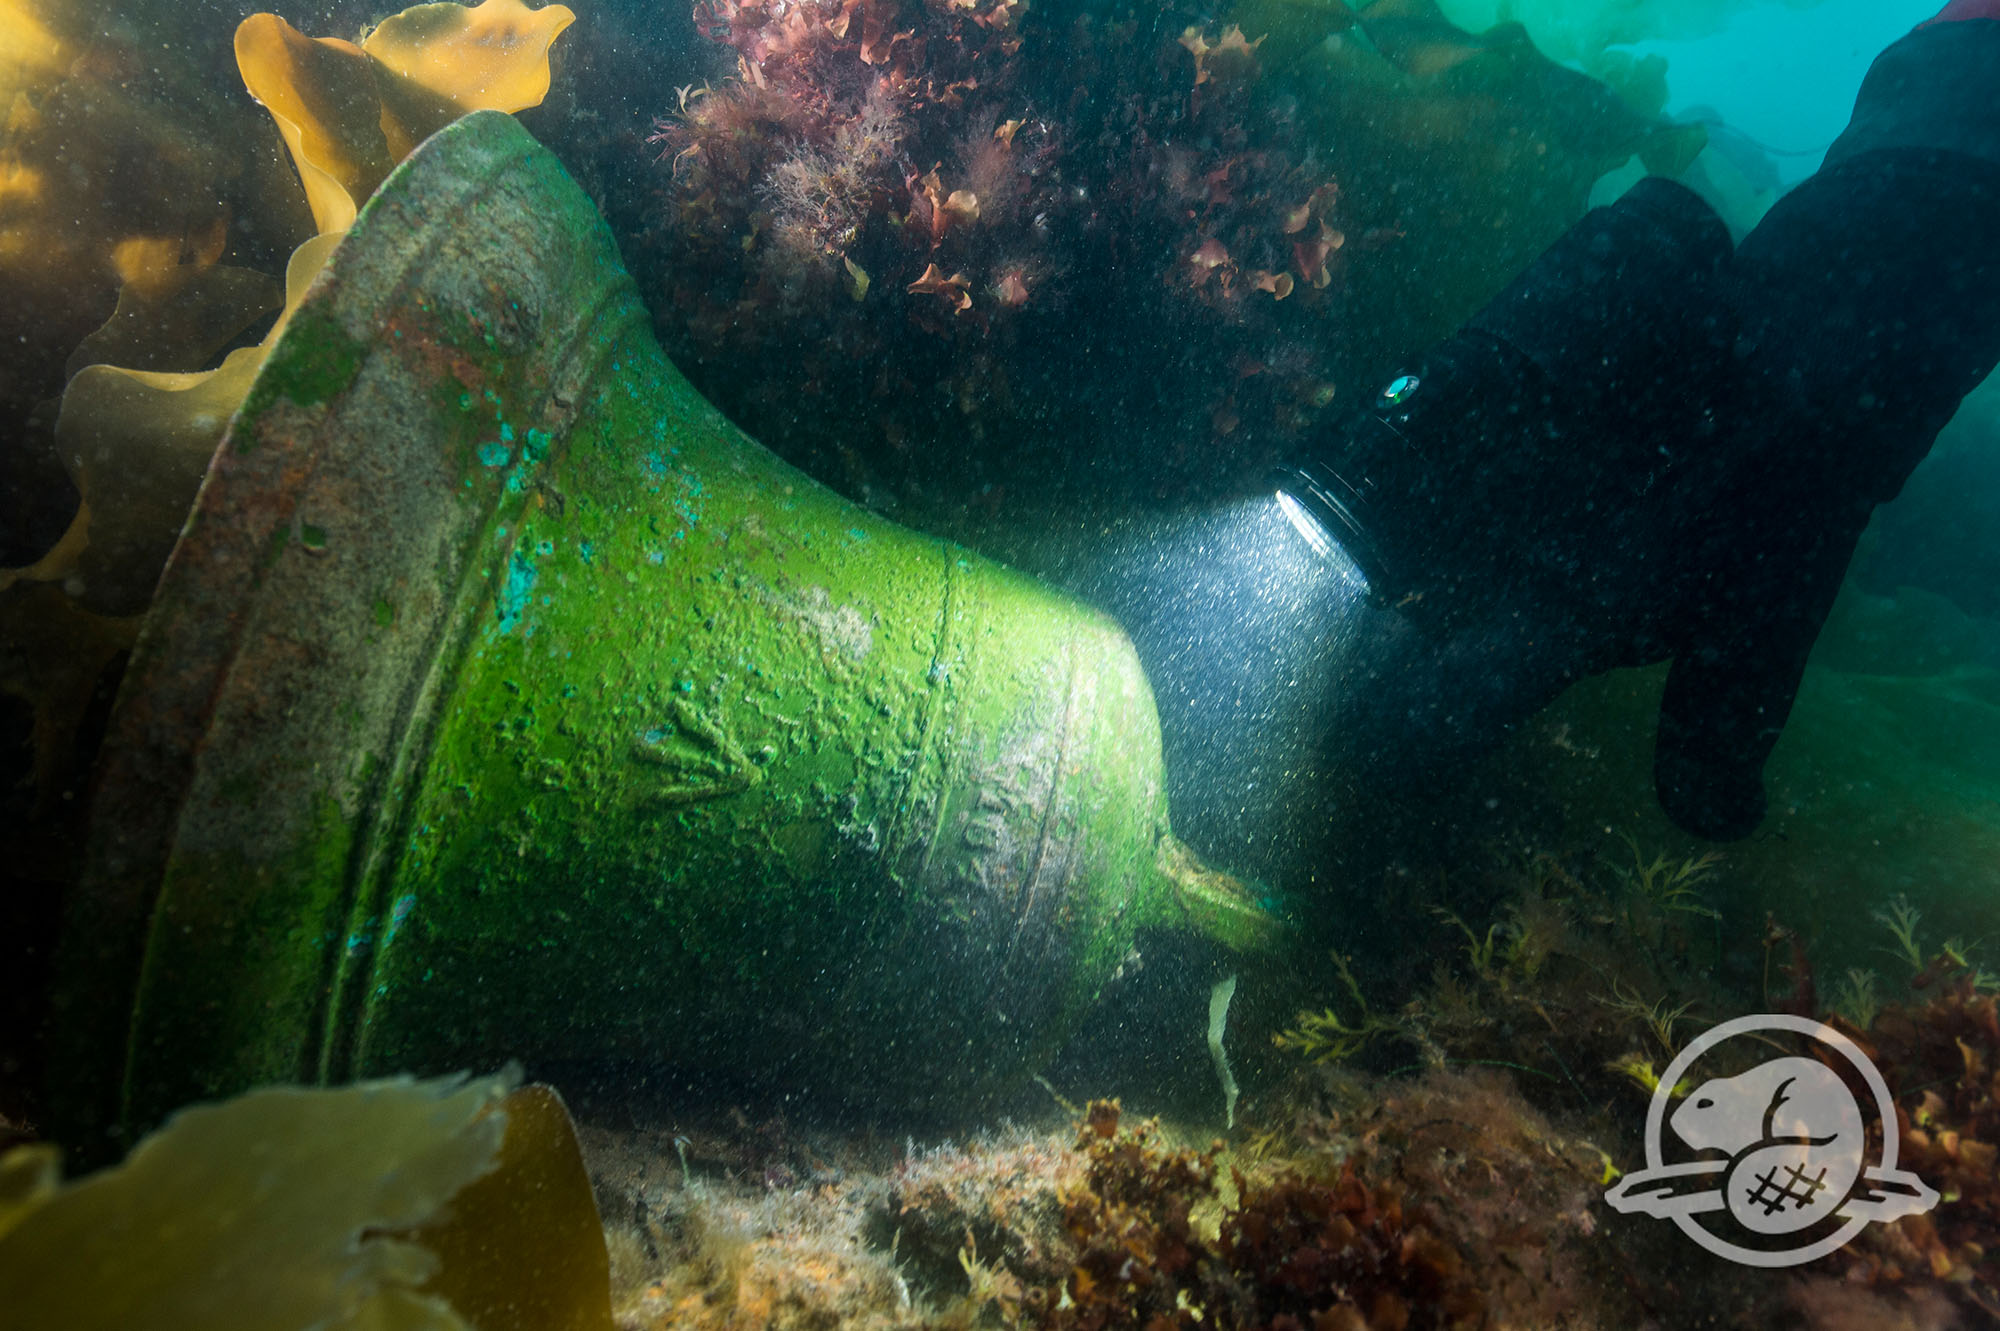 Découverte en Arctique  : La cloche du HMS Erebus a été retrouvée